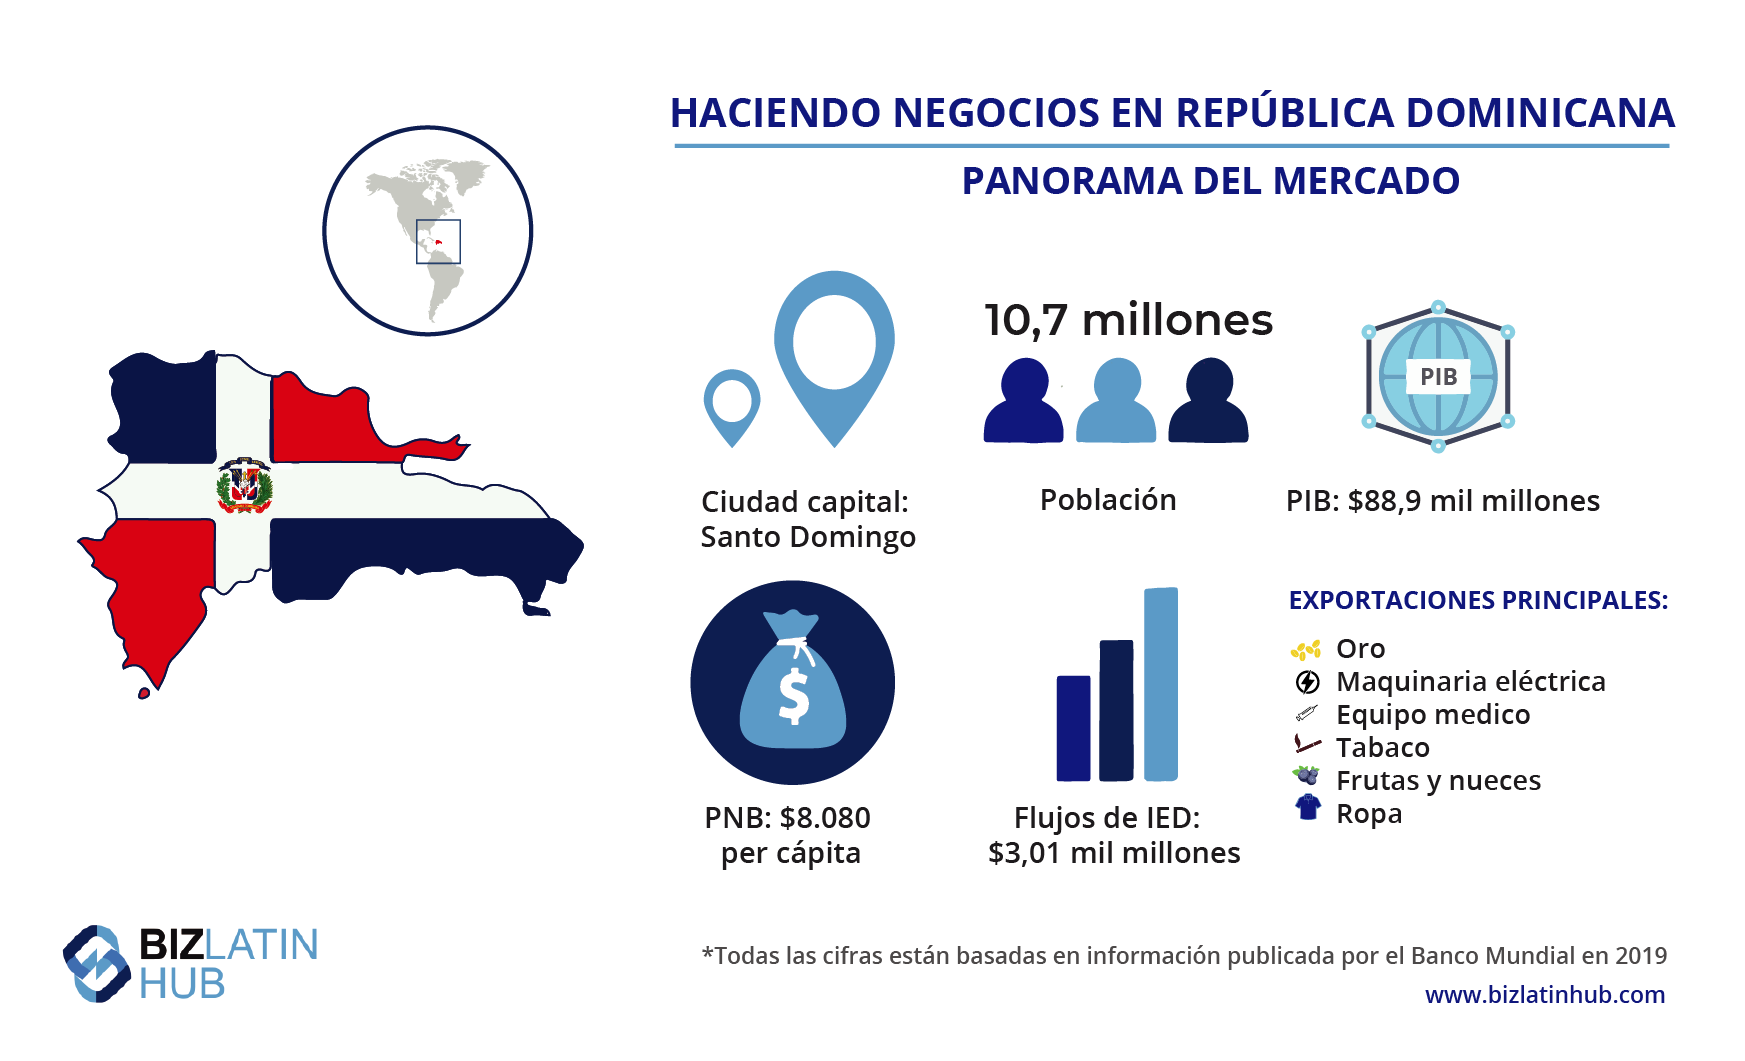 Panorama del mercado en República Dominicana, información que podría interesarle a aquellos pensando en formar una ONG en República Dominicana. 